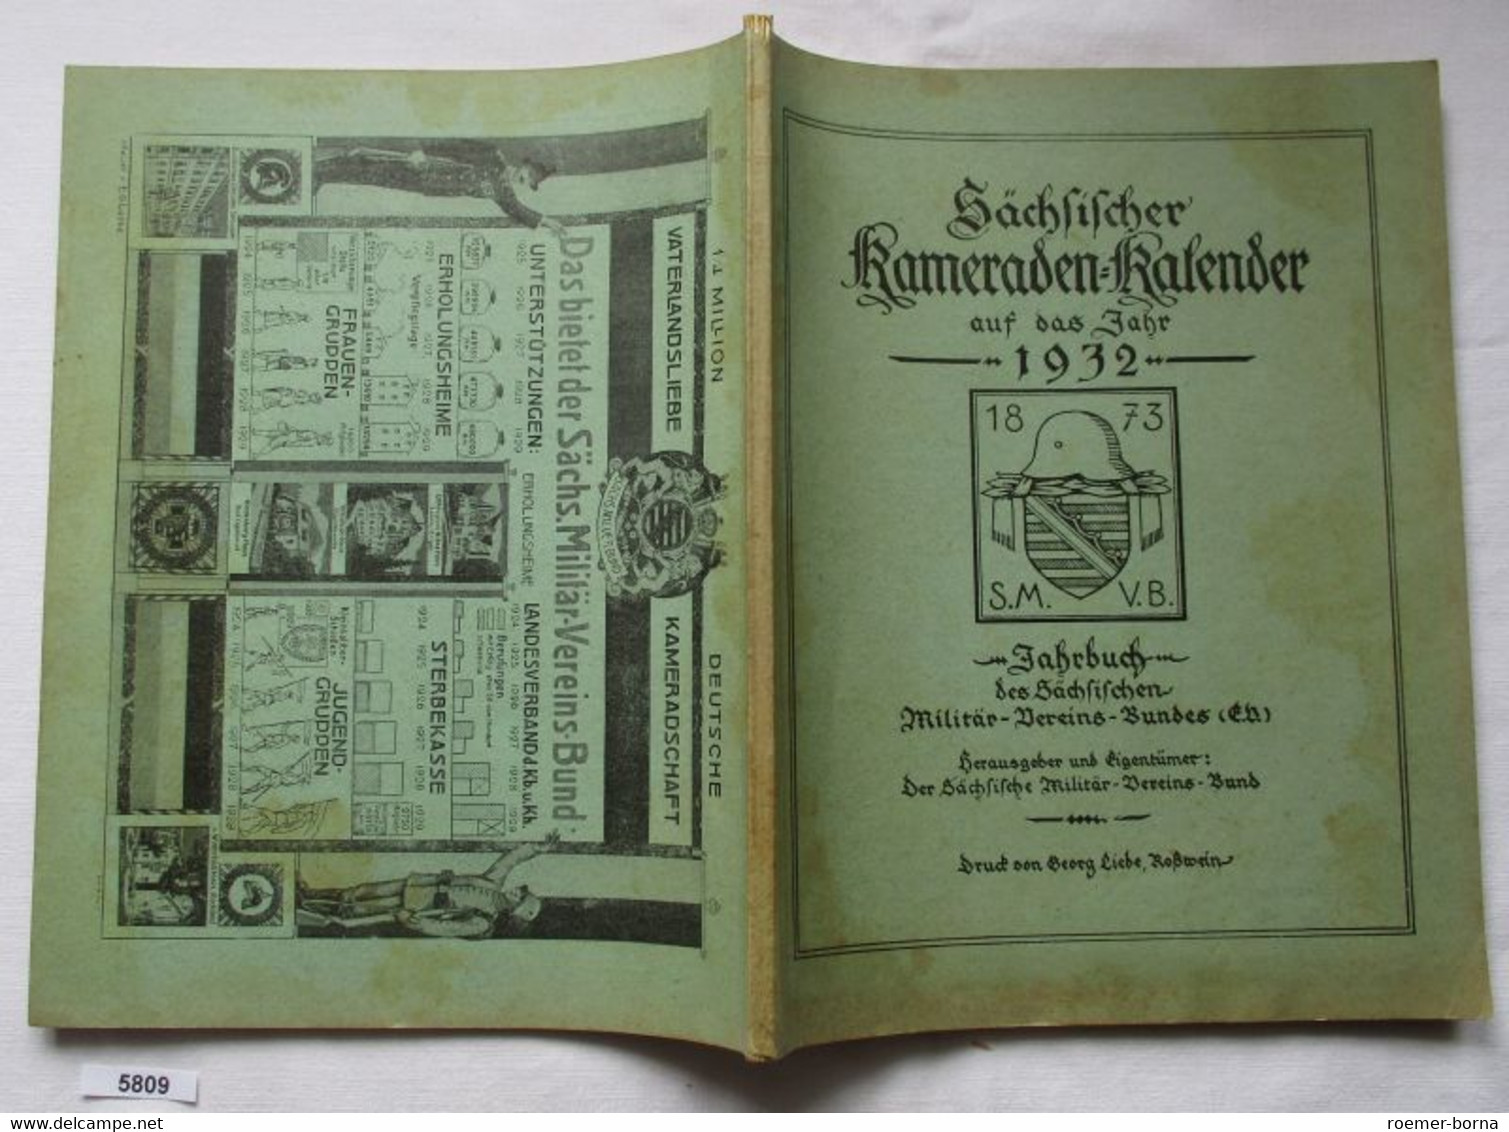 Sächsischer Kameraden-Kalender Auf Das Jahr 1932 - Jahrbuch Des Sächsischen Militär-Vereins-Bundes (E.V.) - Kalenders